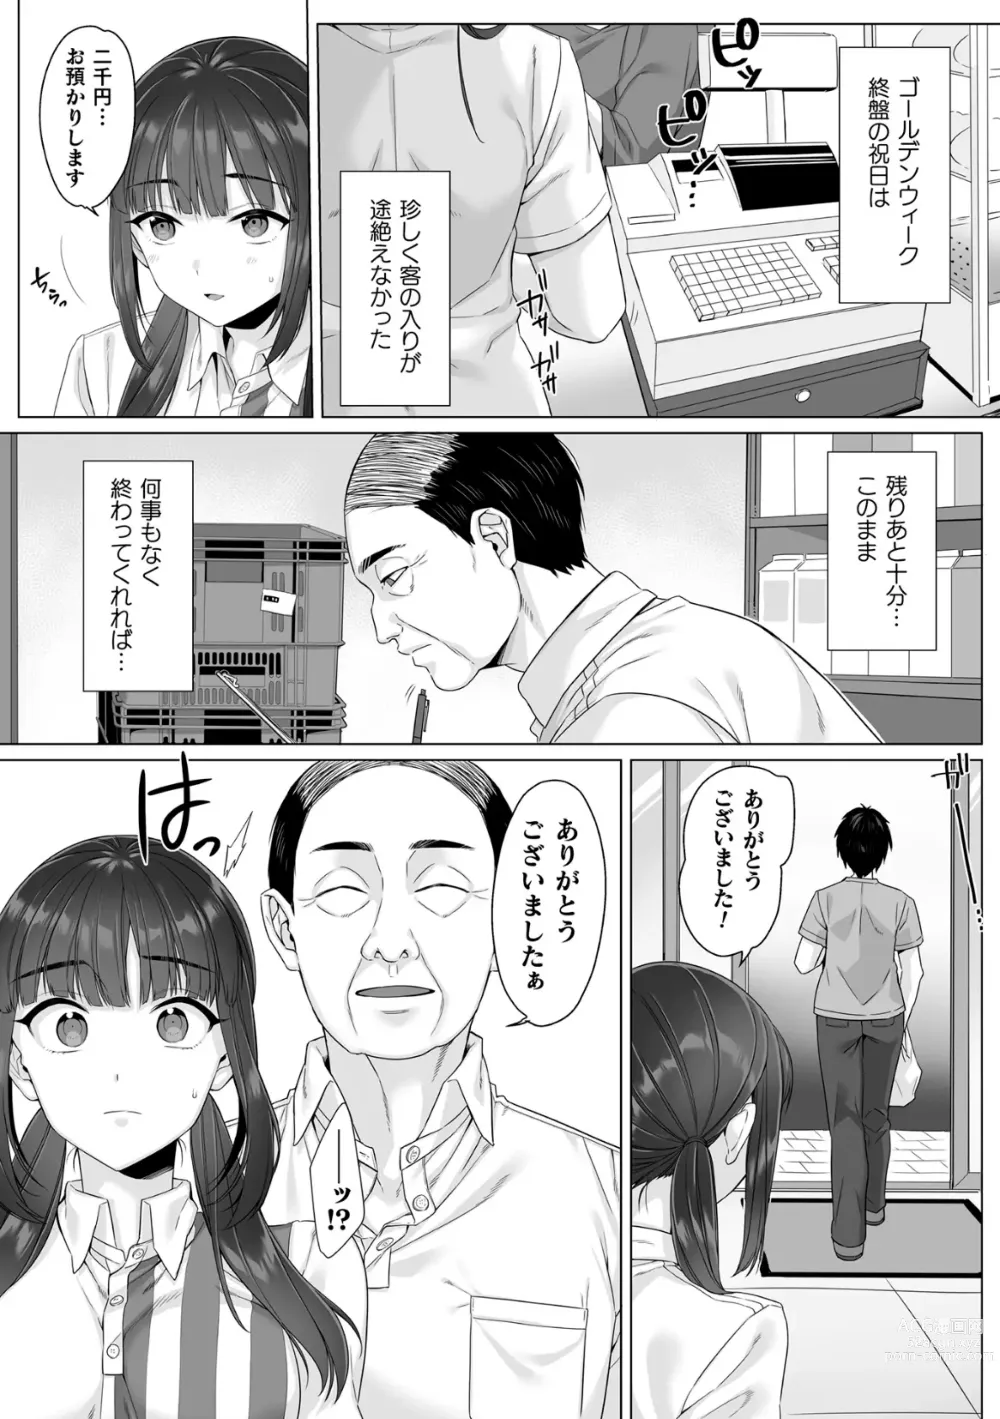 Page 3 of manga Junboku Joshikousei wa Oyaji Iro ni Somerarete Comic Ban Ch. 4